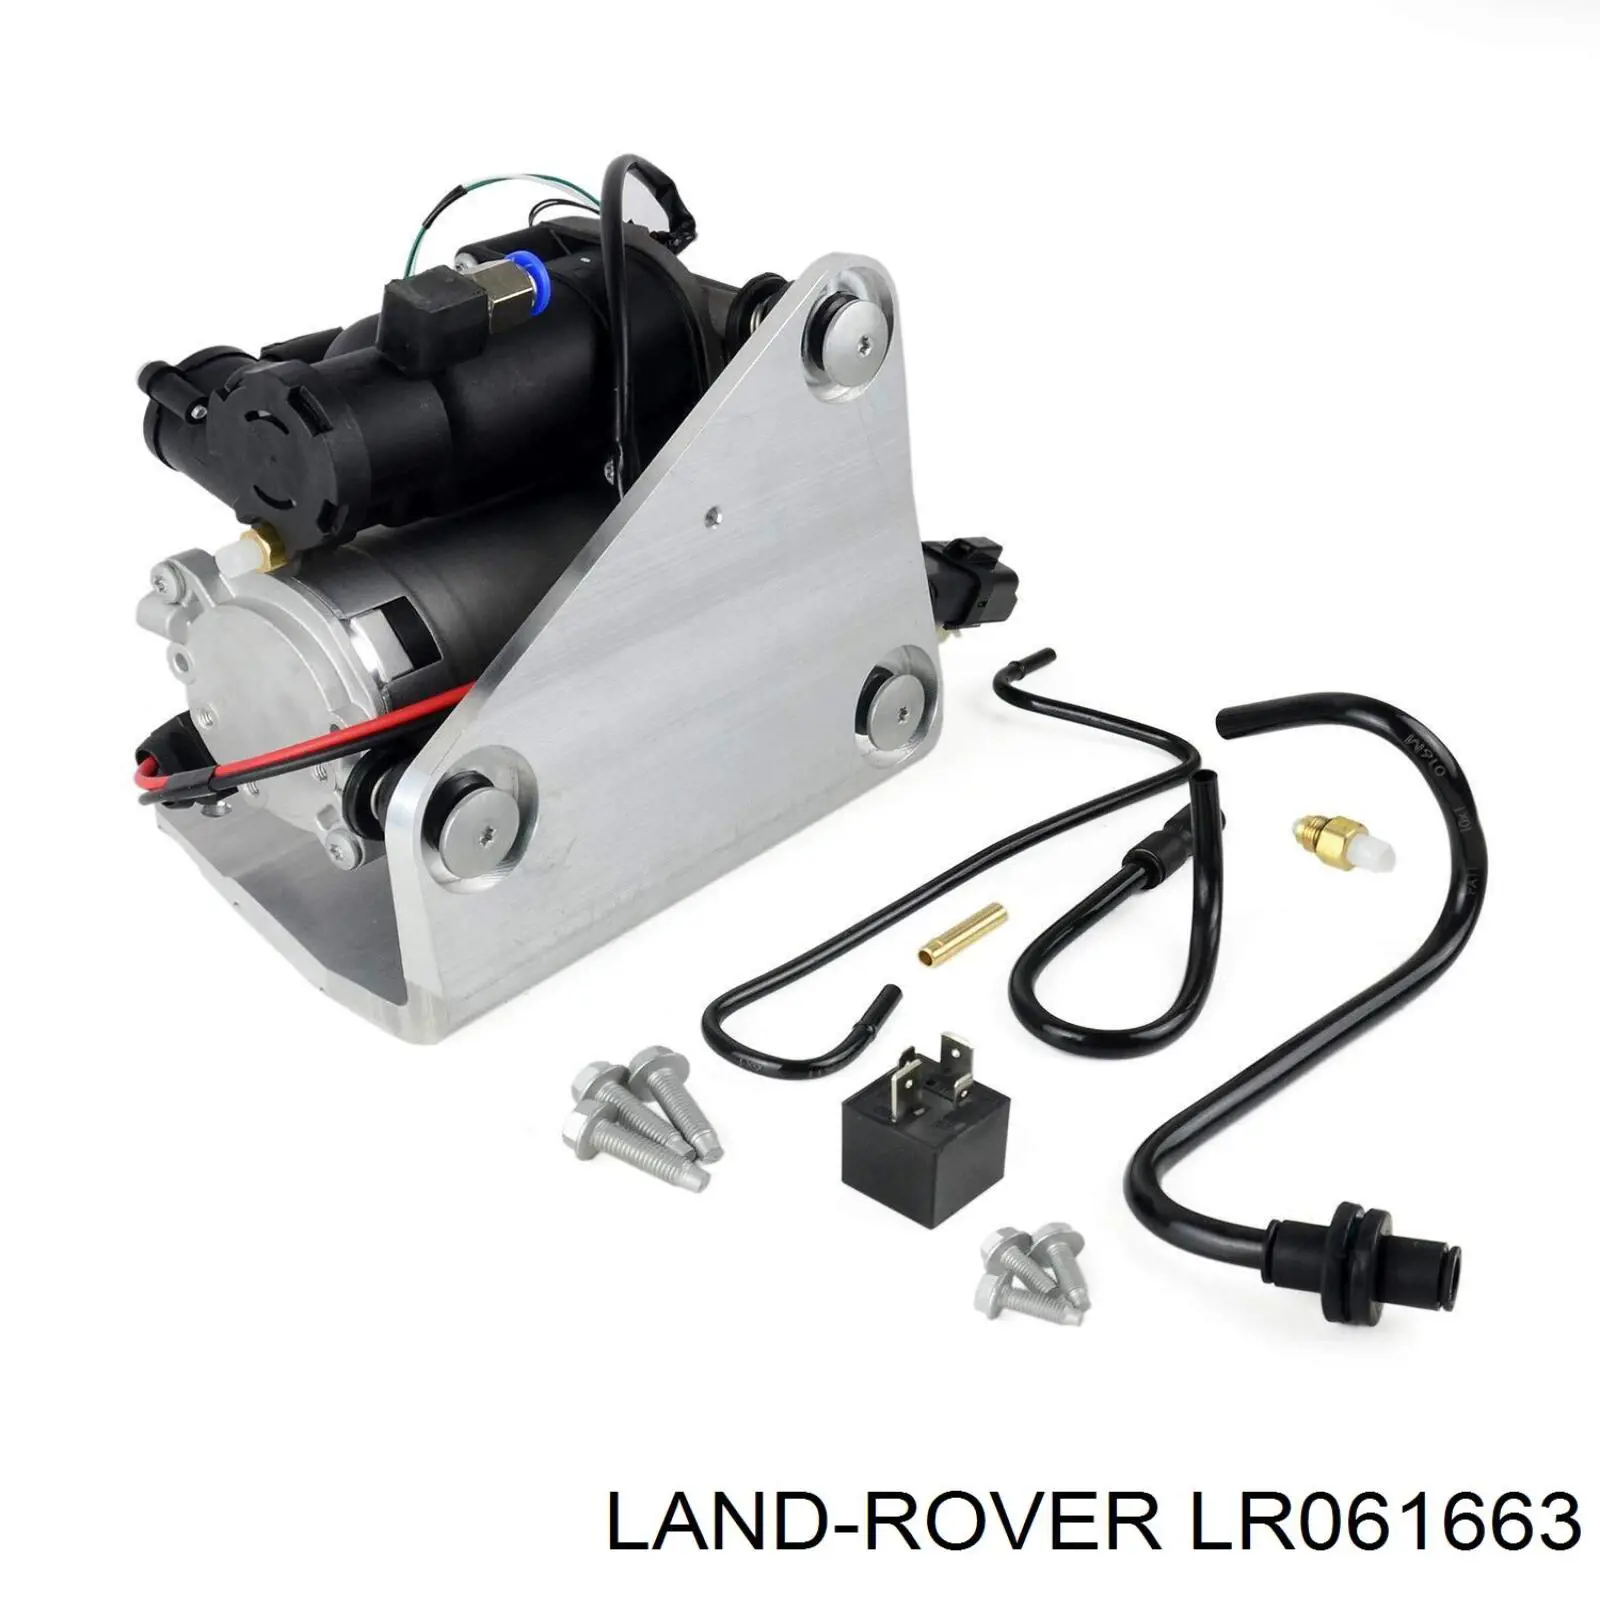 LR061663 Land Rover компрессор пневмоподкачки (амортизаторов)